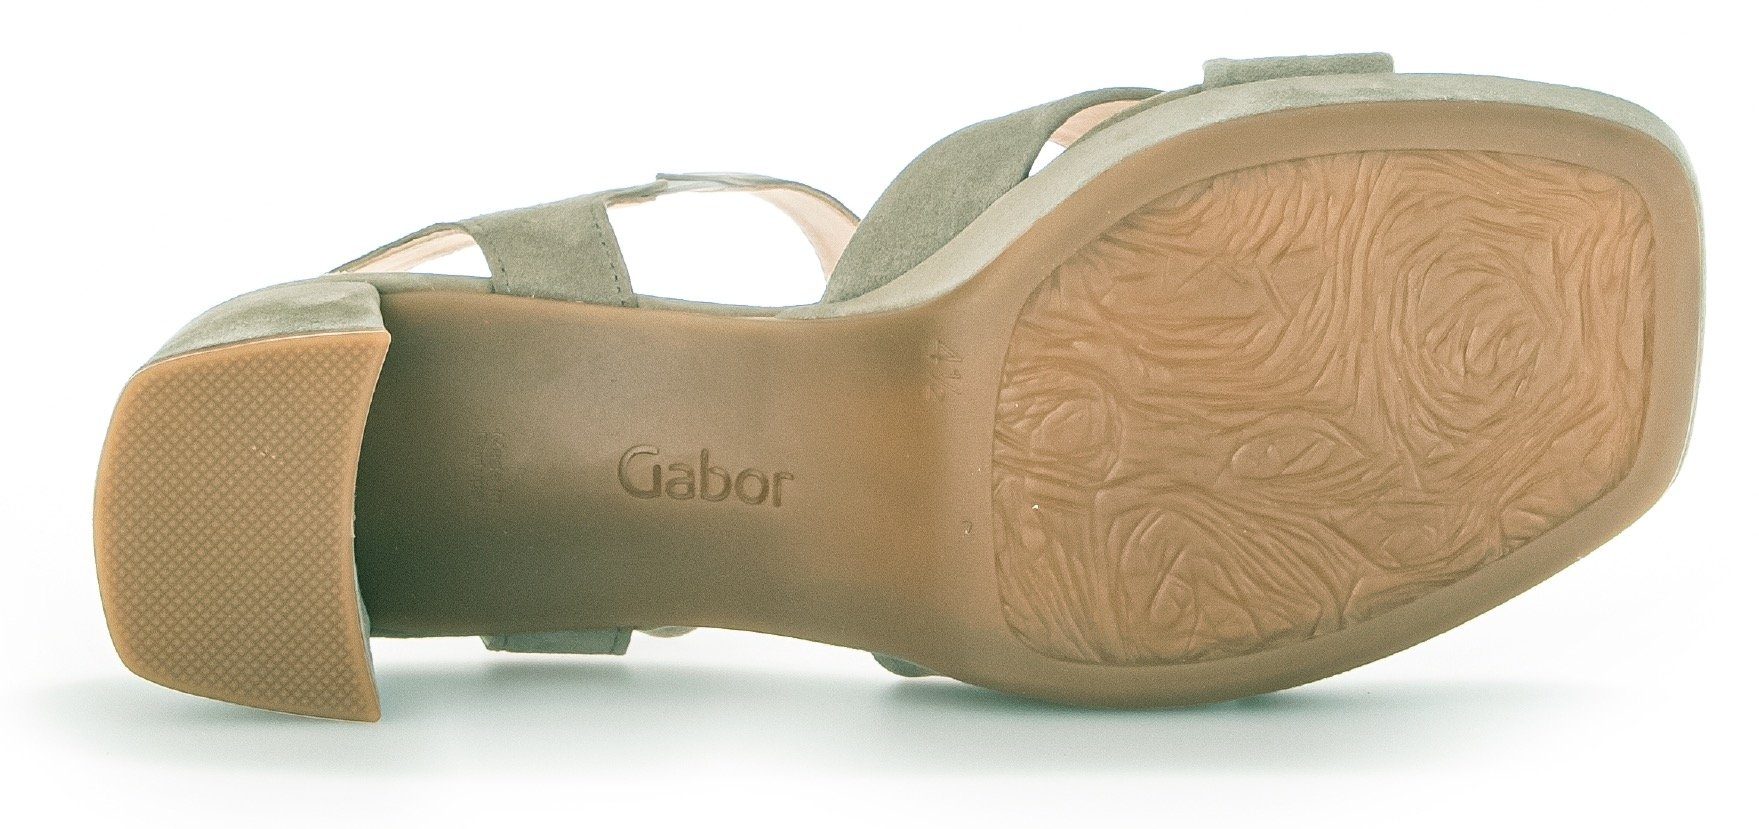 Kreuzbandage, G mit Weite Sandalette hellgrün Gabor